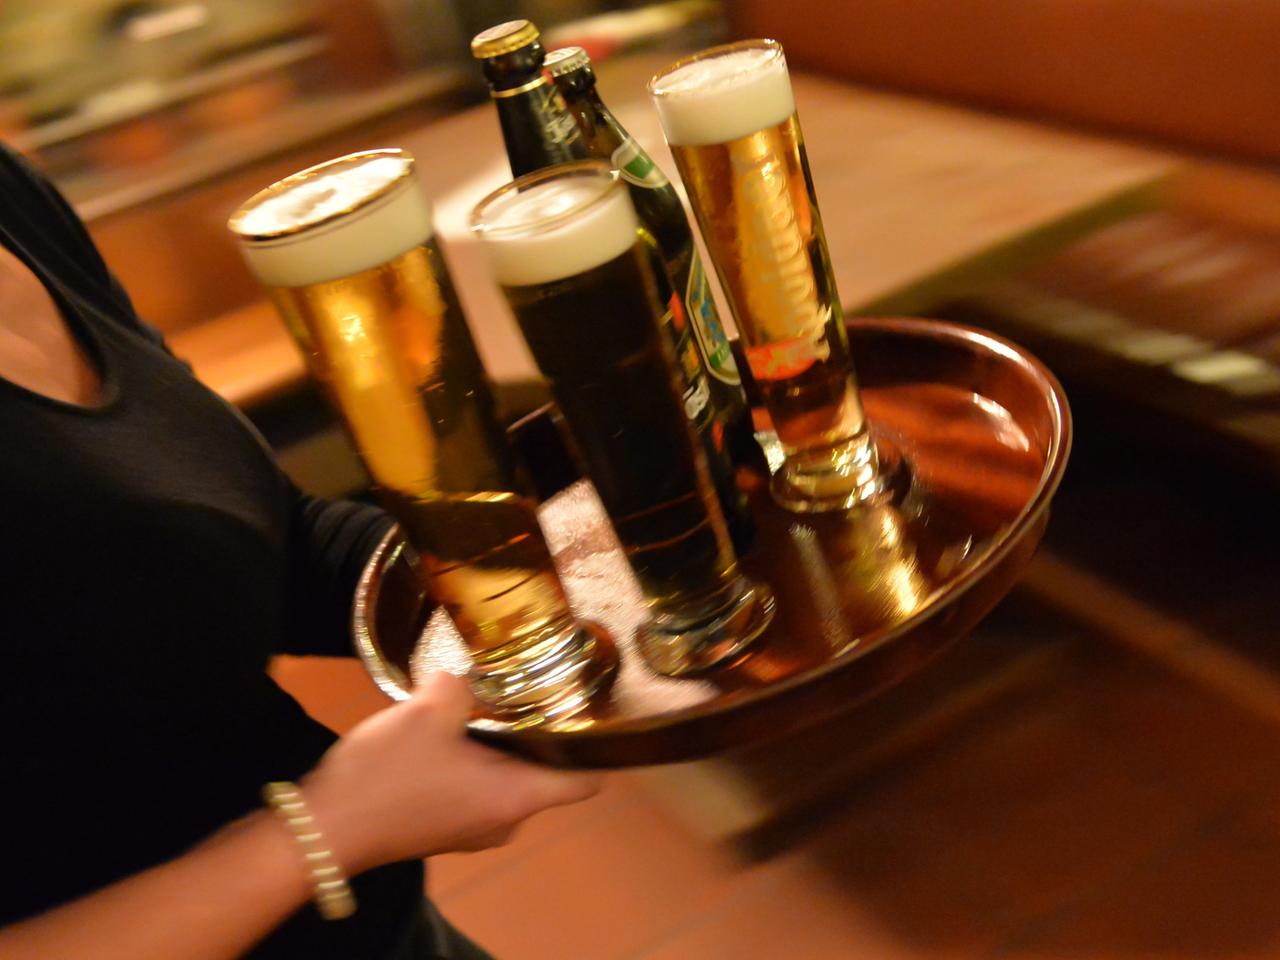 Eine Bedienung trägt am 29.10.2013 in Erfurt (Thüringen) in einem Lokal ein Tablett mit Bier.